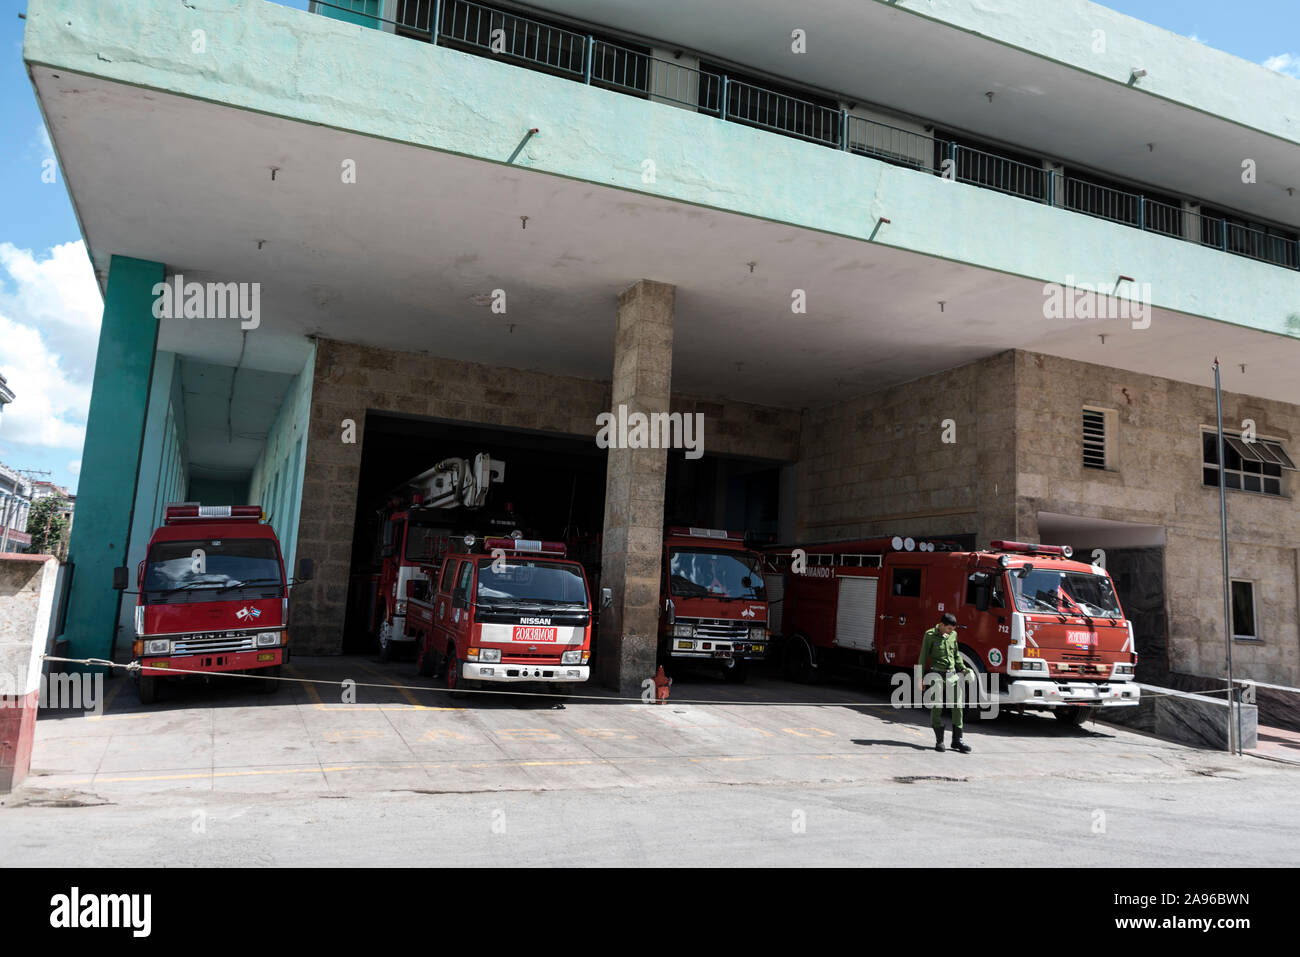 Cuerpo de Bomberos Republica de Cuba ( Vigili del Fuoco Repubblica di Cuba) è una delle principali stazioni dei vigili del fuoco a l'Avana, Cuba. La maggior parte degli incendi un apparecchio Foto Stock